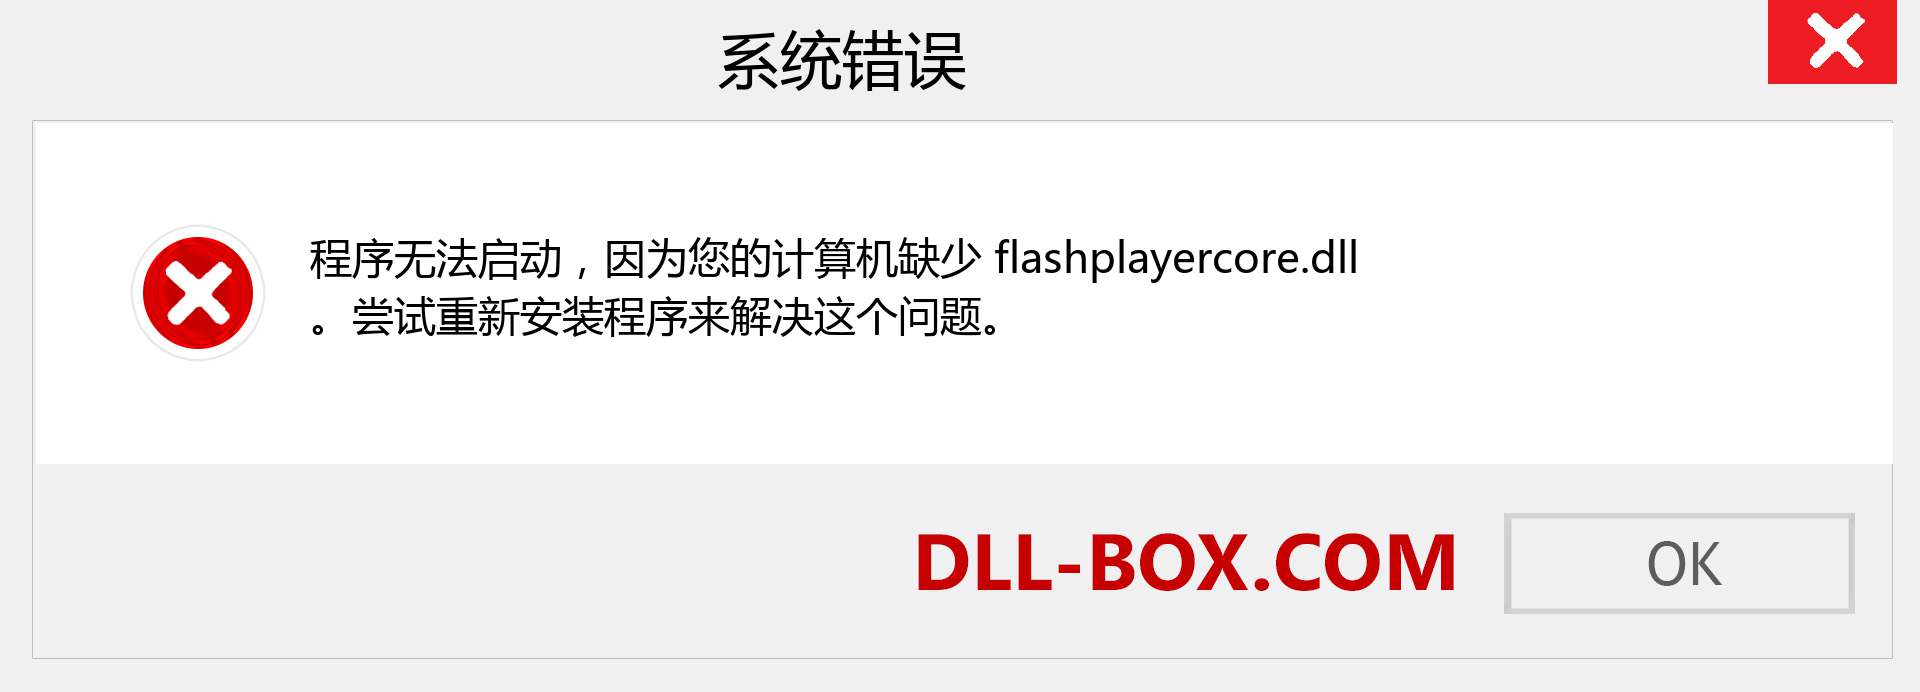 flashplayercore.dll 文件丢失？。 适用于 Windows 7、8、10 的下载 - 修复 Windows、照片、图像上的 flashplayercore dll 丢失错误